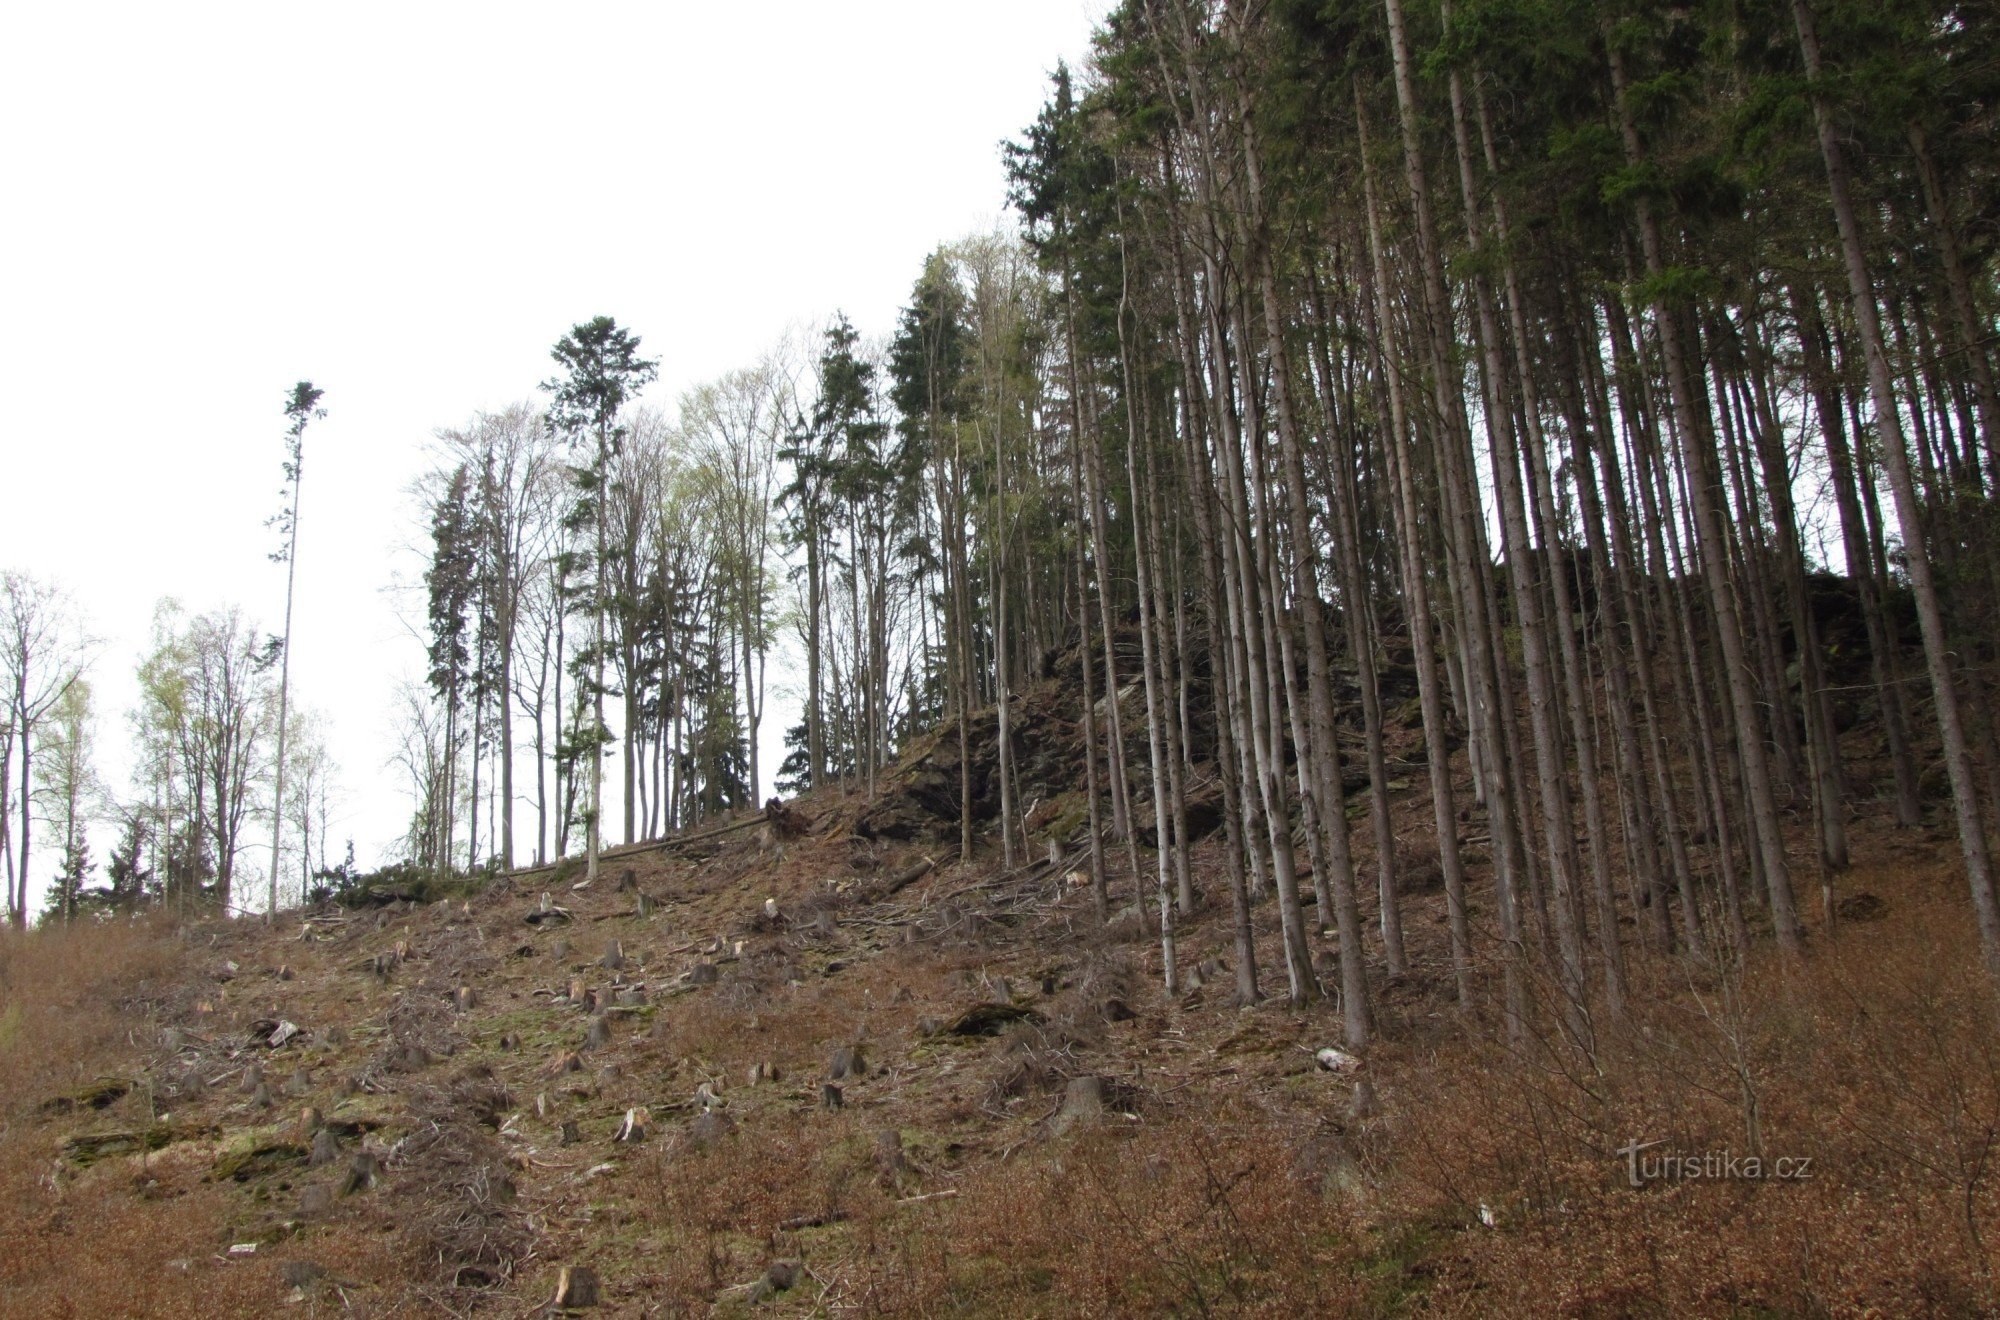 步行穿过 Hučava 山谷